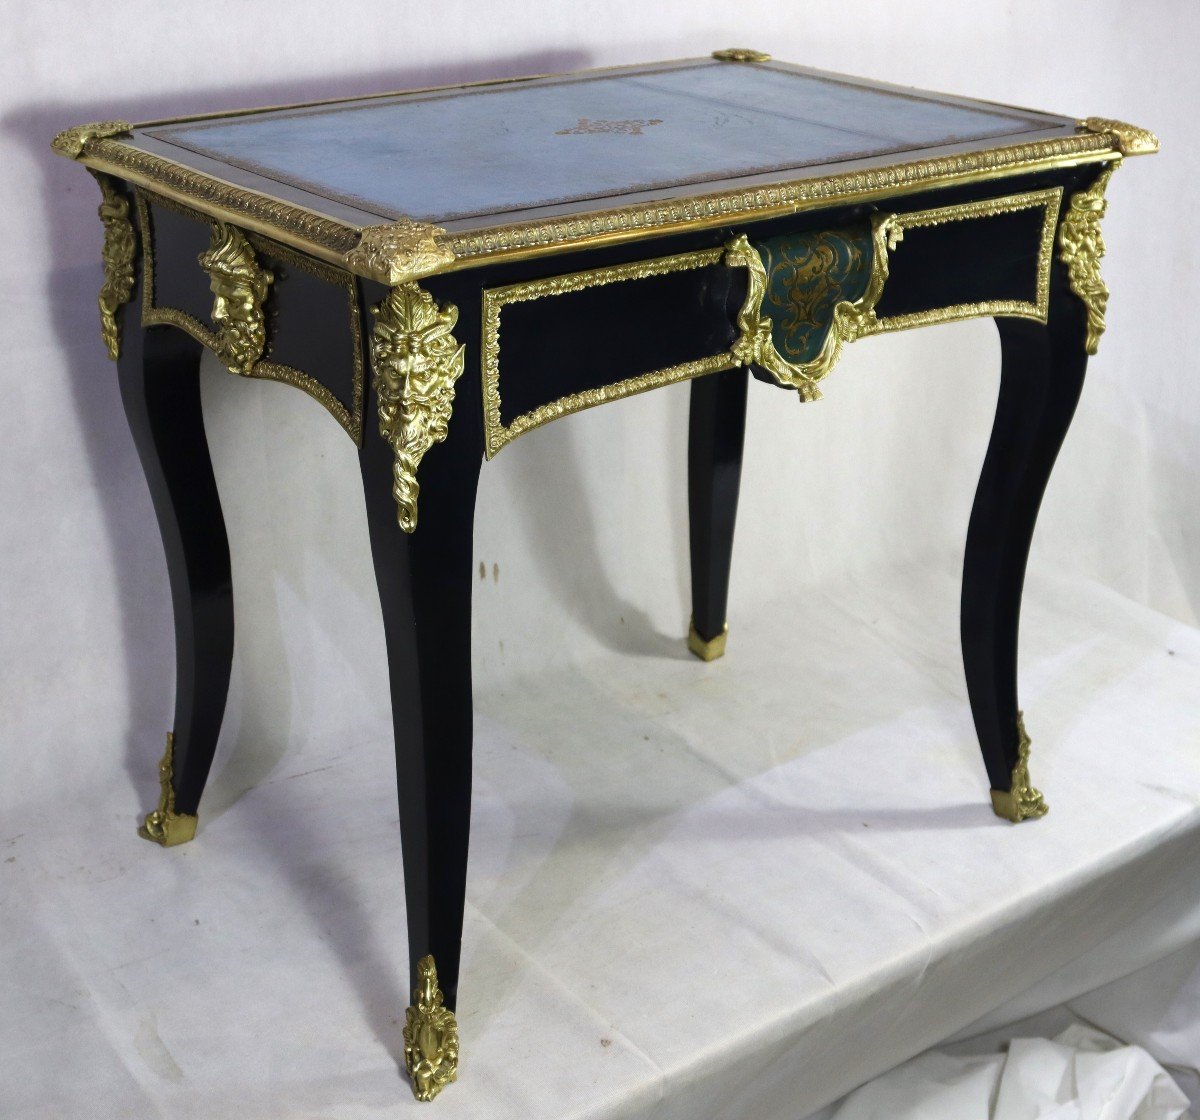 Table bureau Style Louis XIV, époque Nap III, XIXe